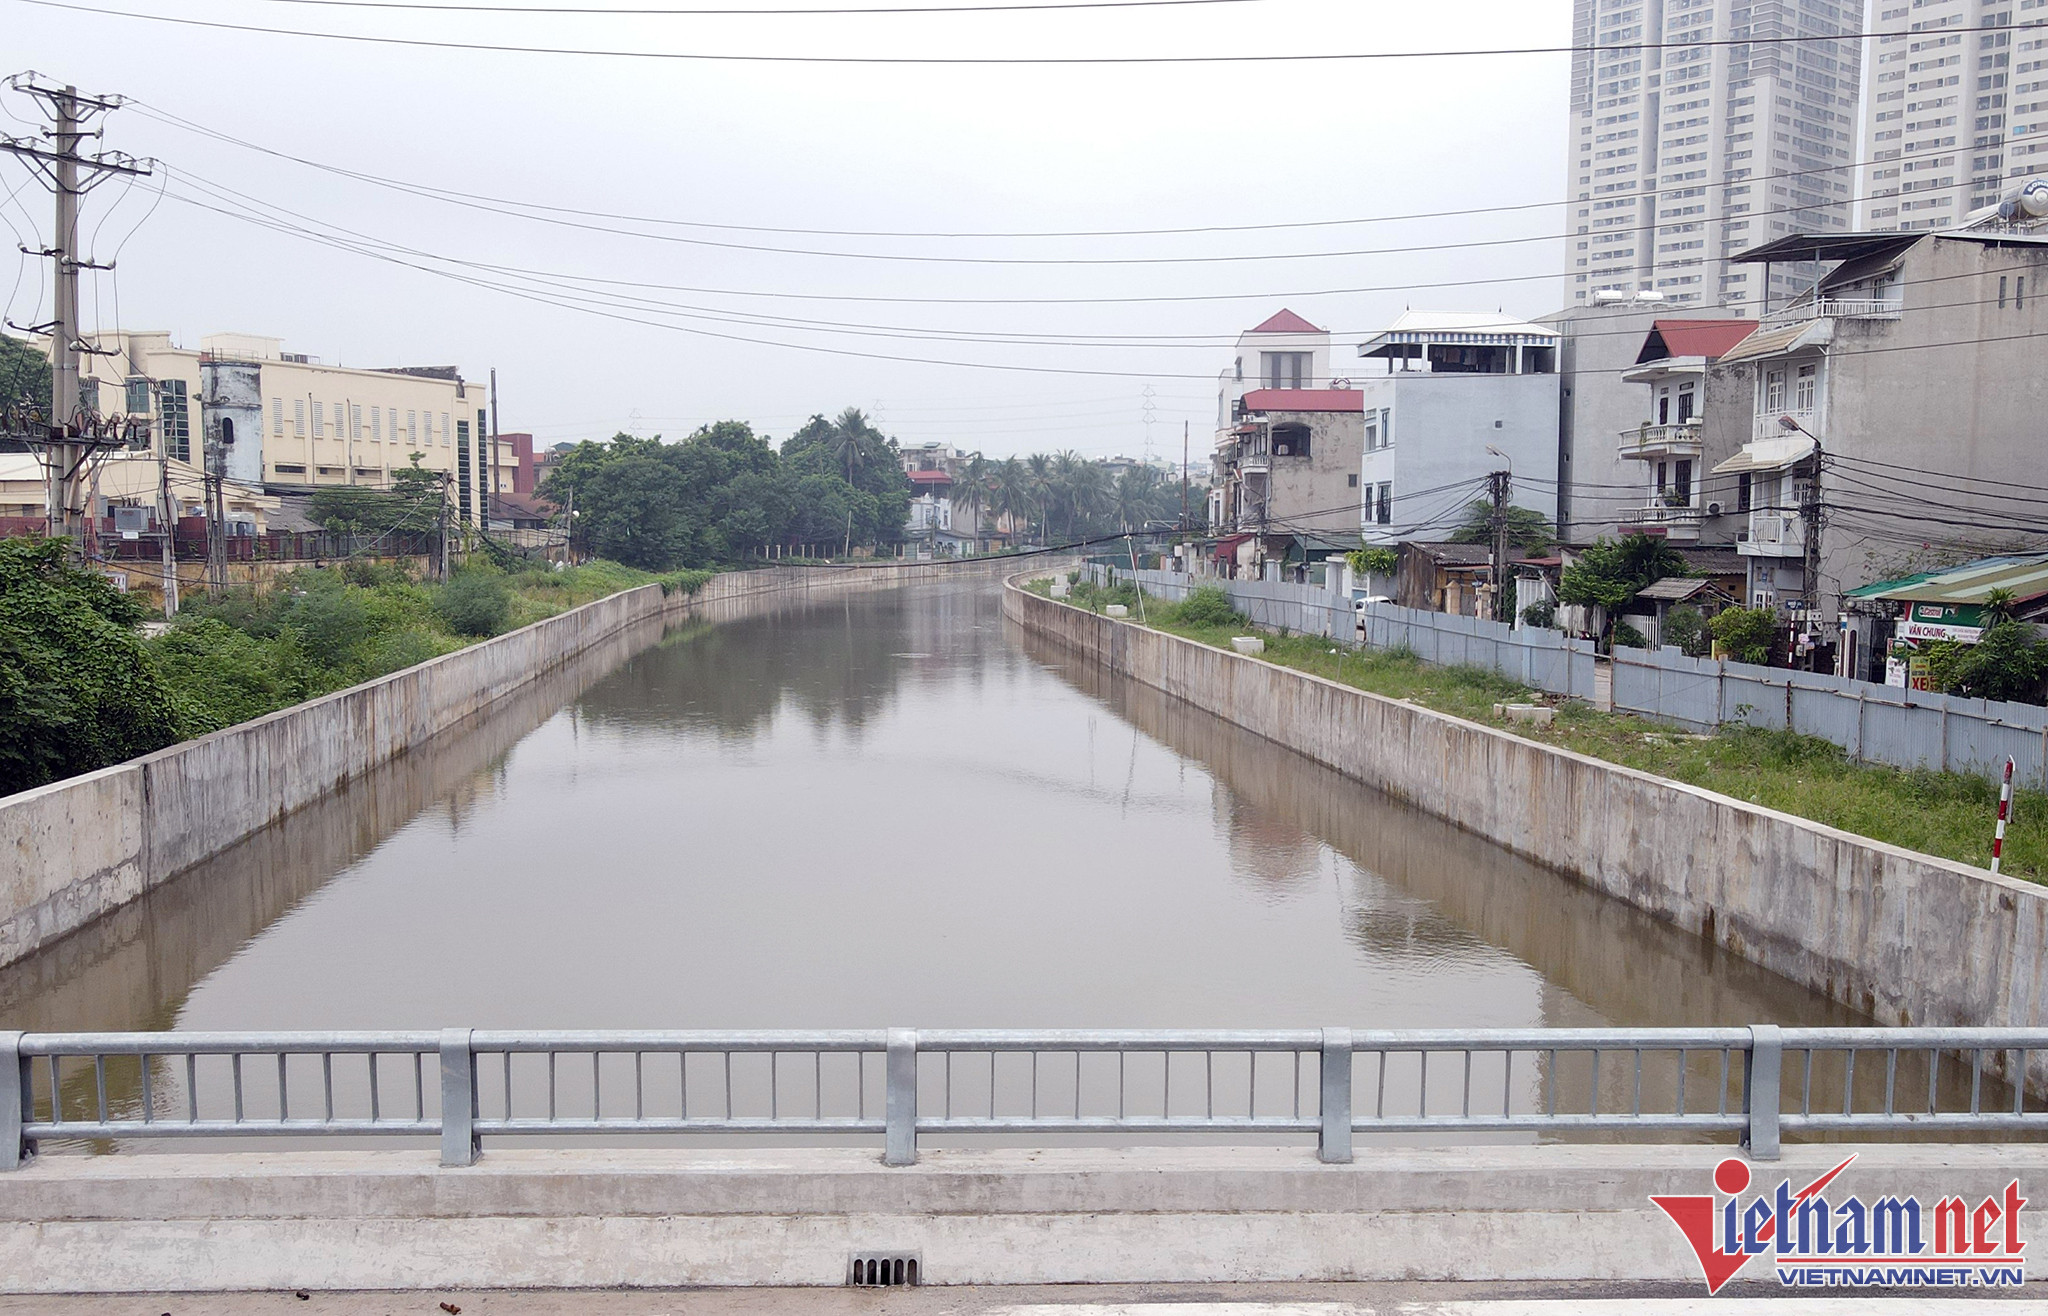 Sau nhiều năm xây dựng, phần lớn đoạn kênh La Khê (nằm trên huyện Hoài Đức) dẫn nước từ sông Nhuệ ra Trạm bơm Yên Nghĩa đã hoàn thành.